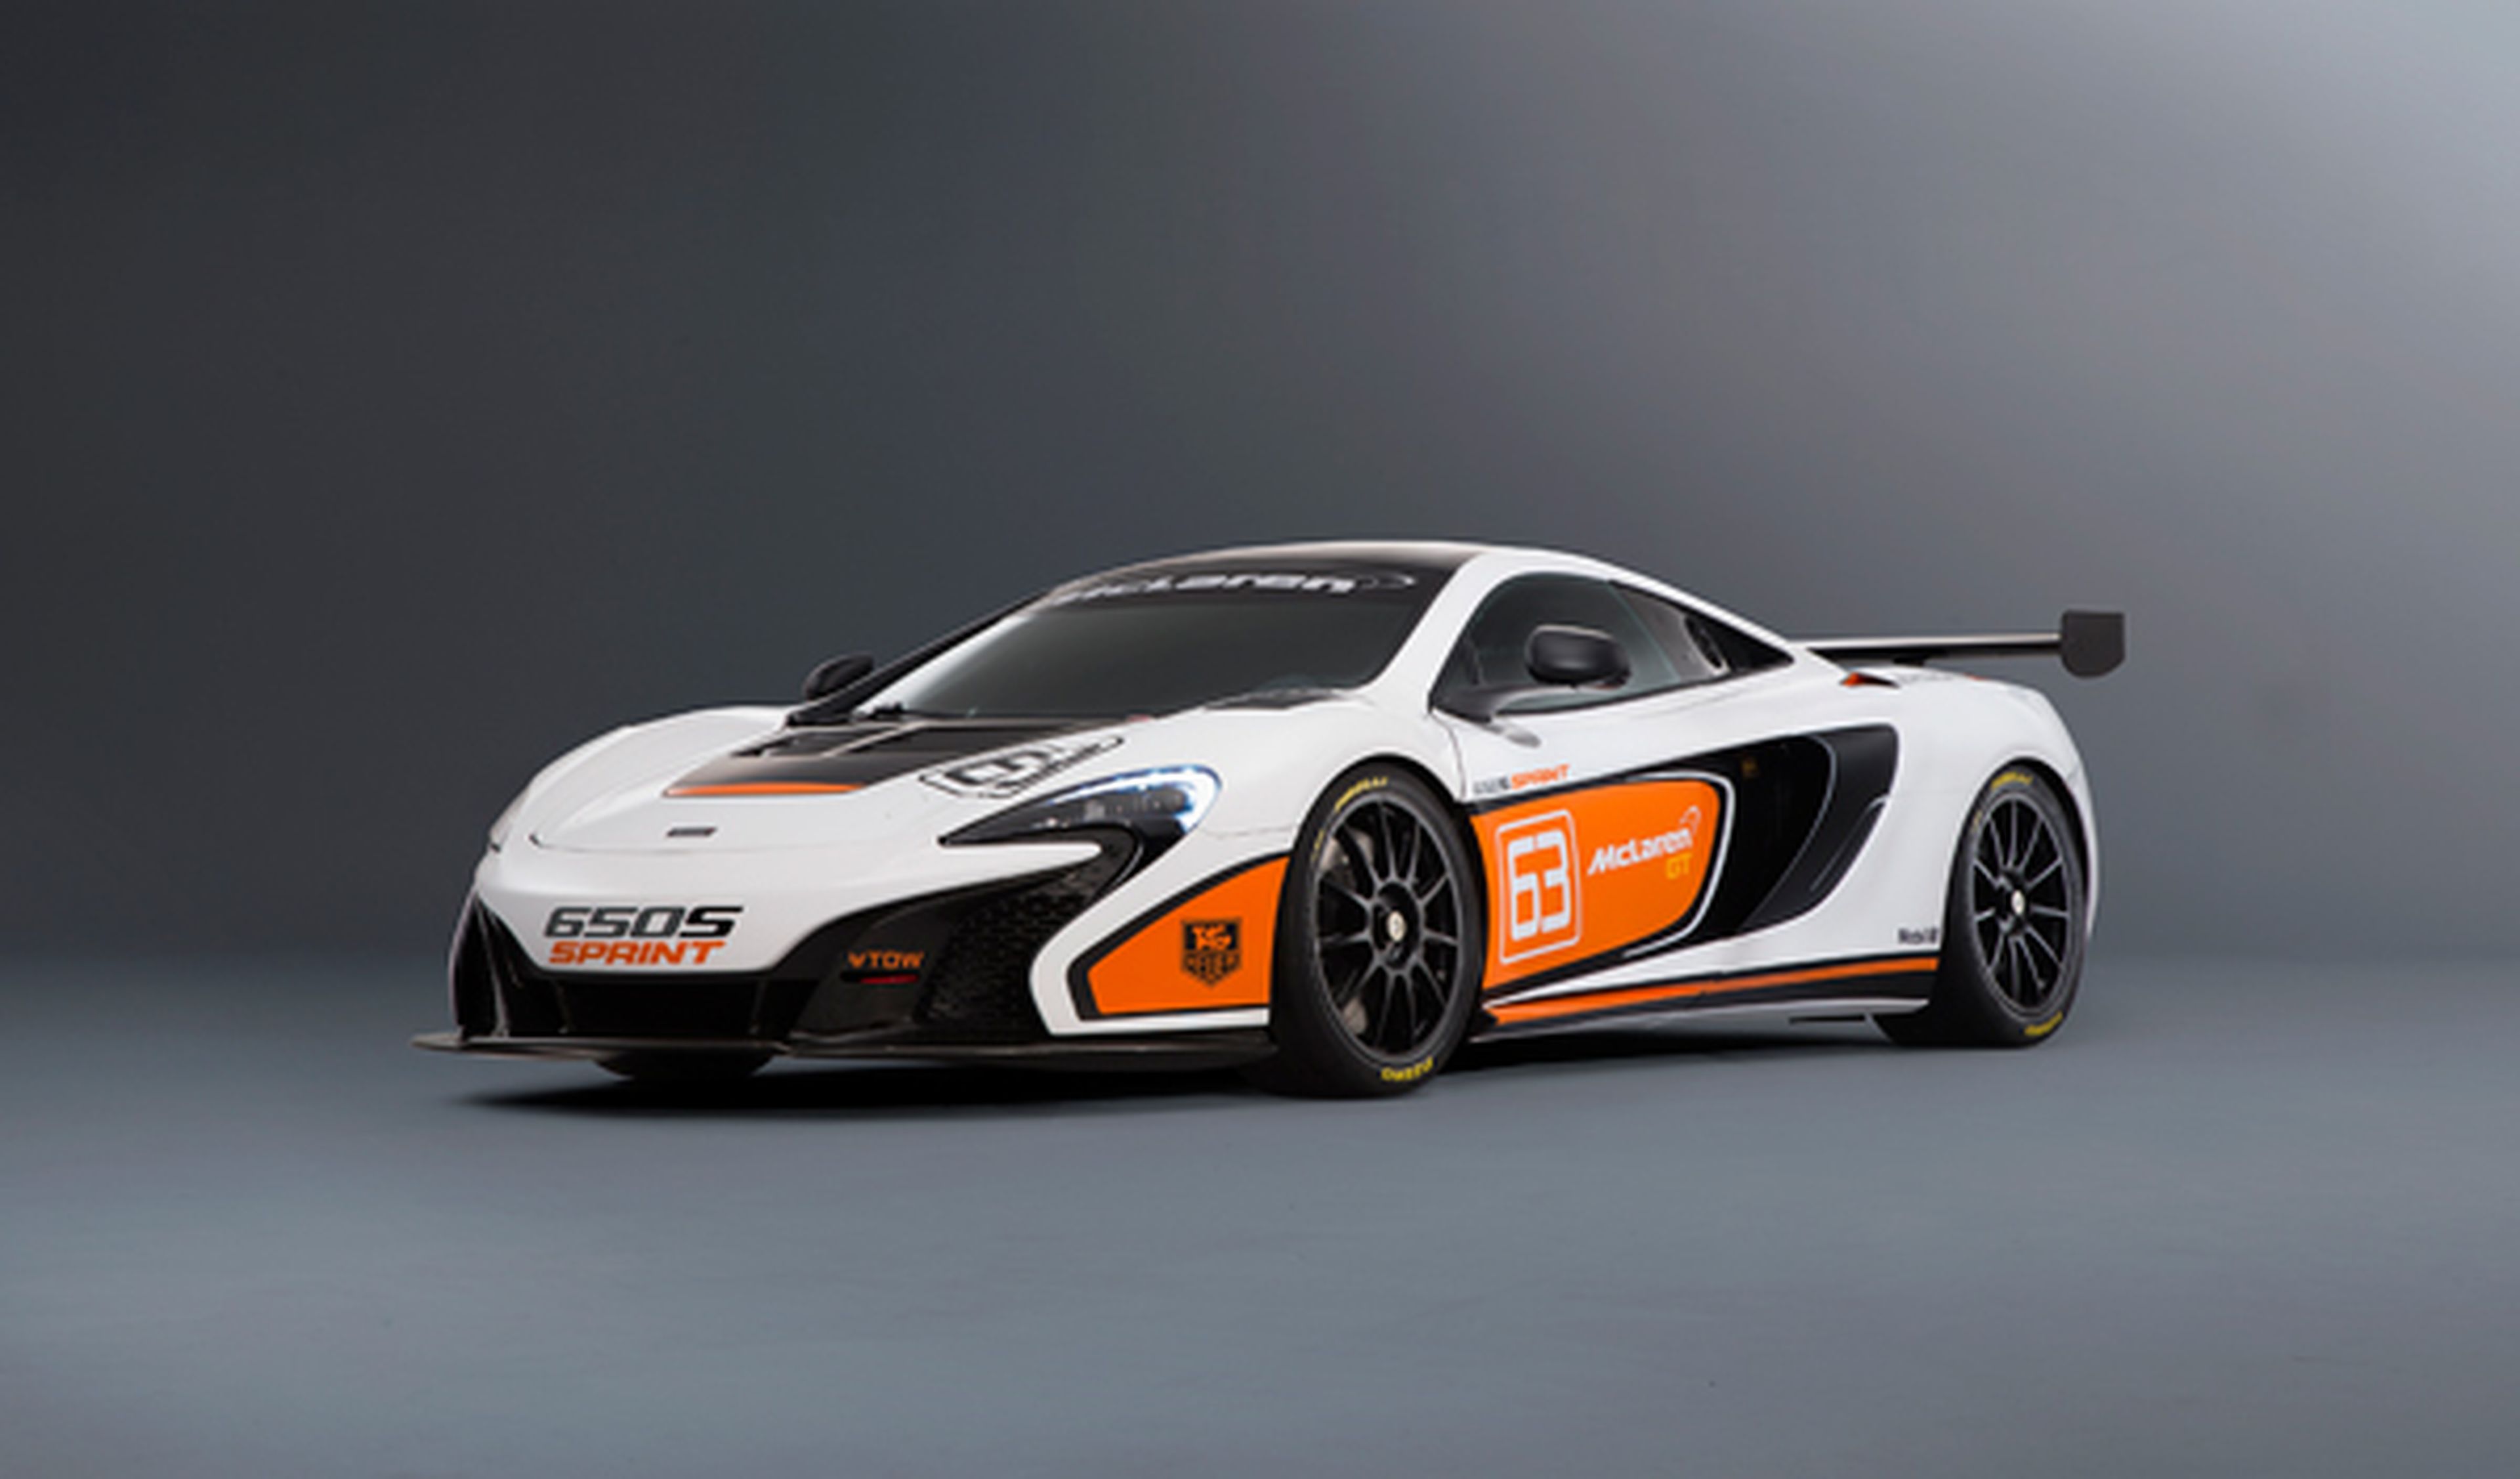 Nuevo McLaren 650S Sprint